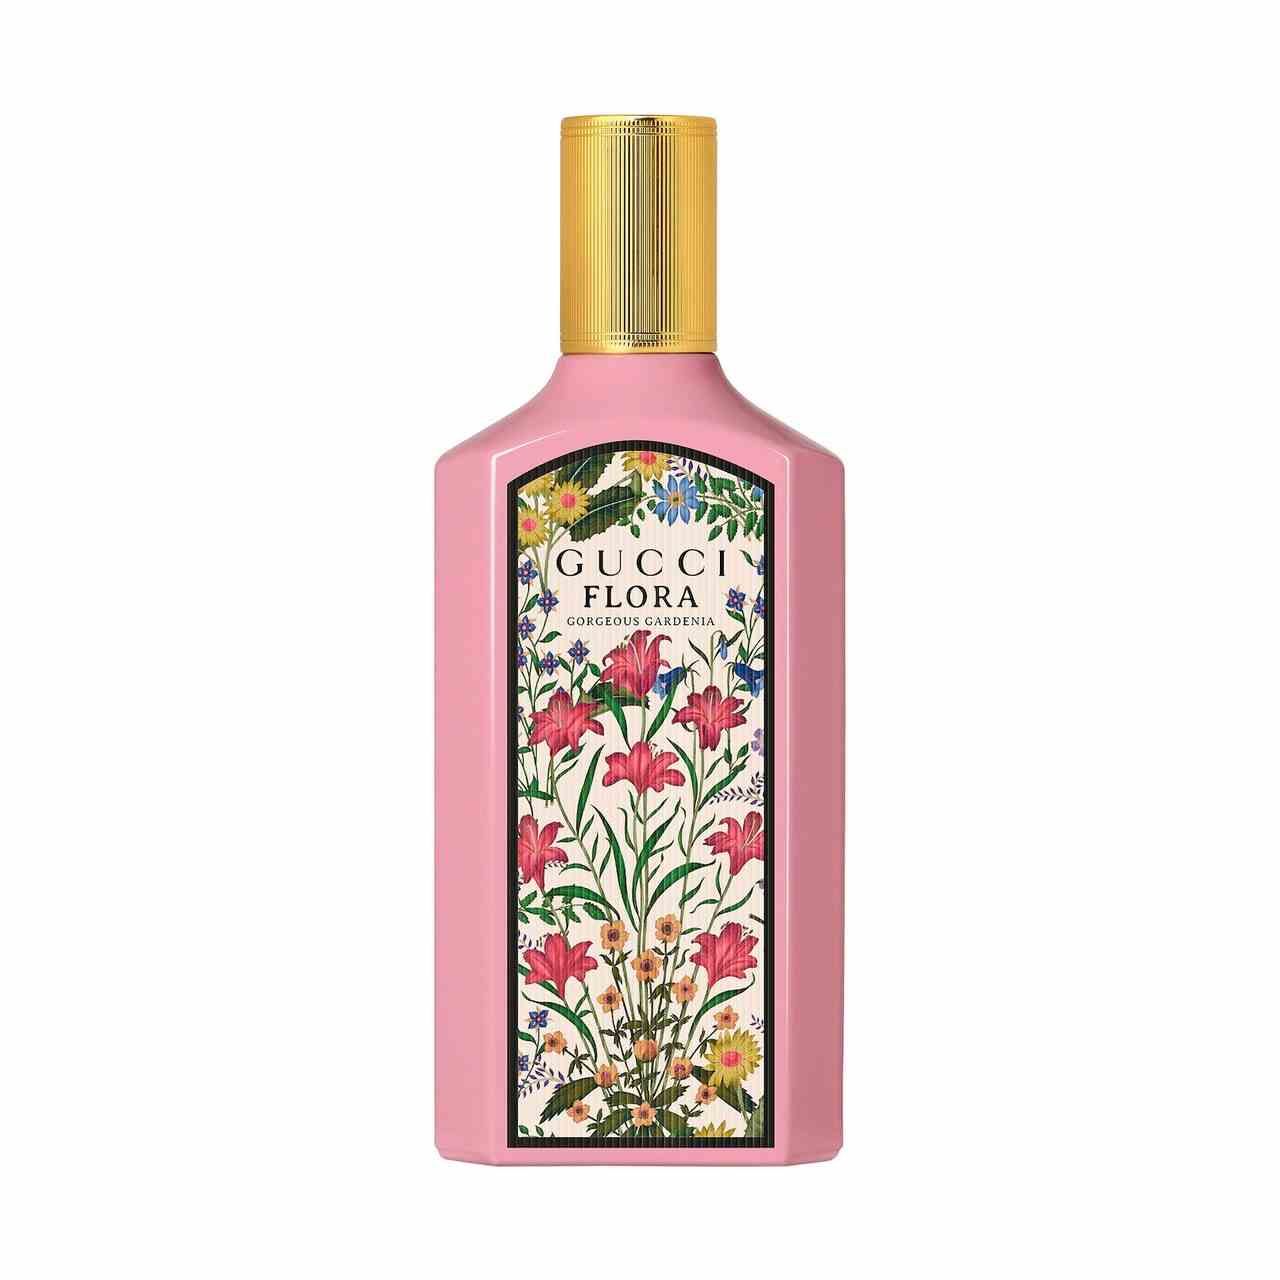 Gucci Flora Gorgeous Gardenia Eau de Parfum rosafarbene Parfümflasche mit floralem Panel und goldener Kappe auf weißem Hintergrund